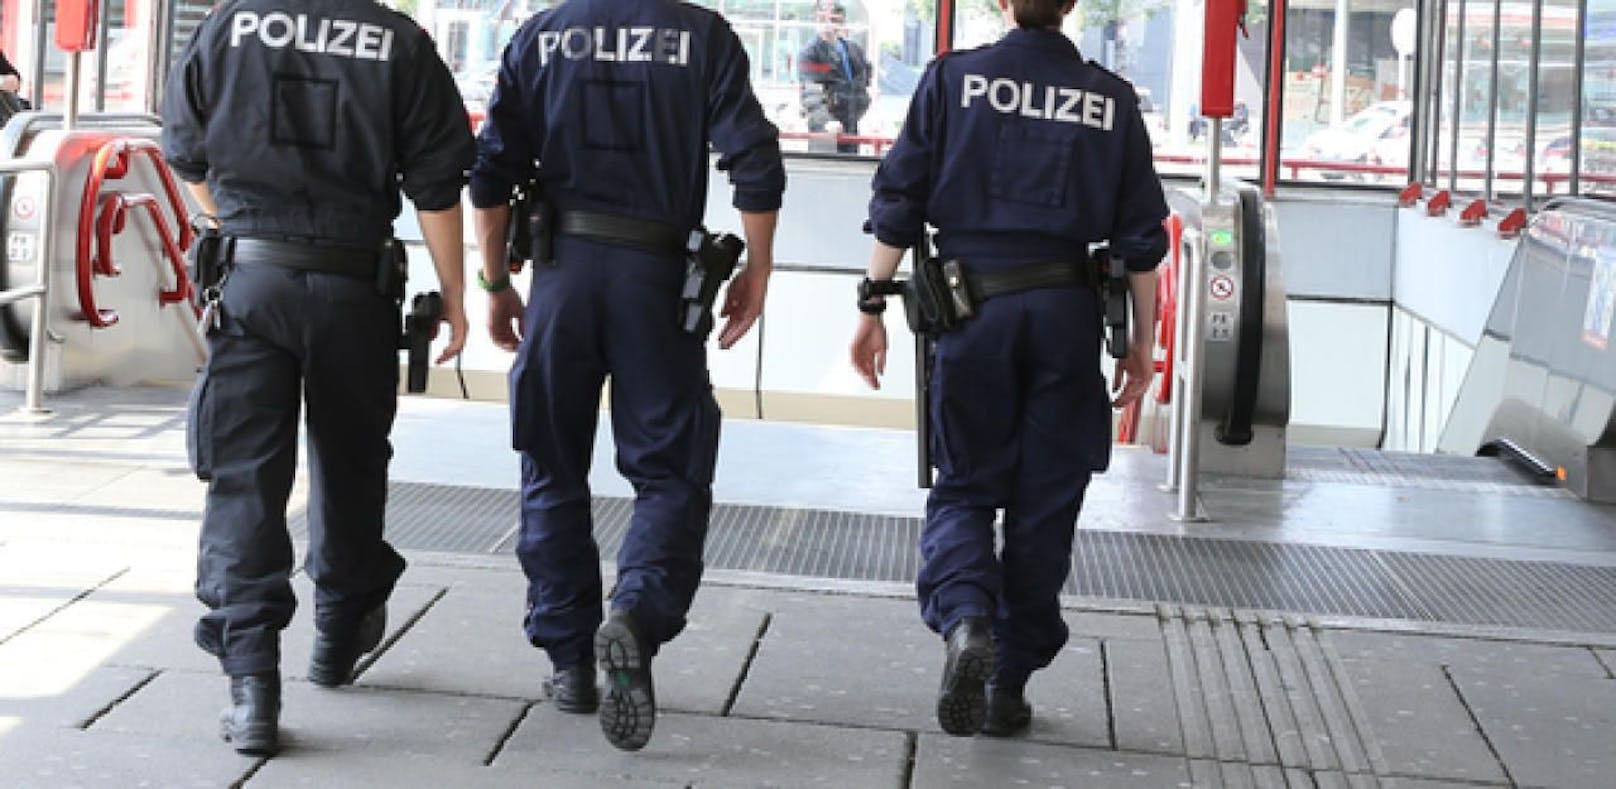 Wiener Polizisten wegen Misshandlung suspendiert